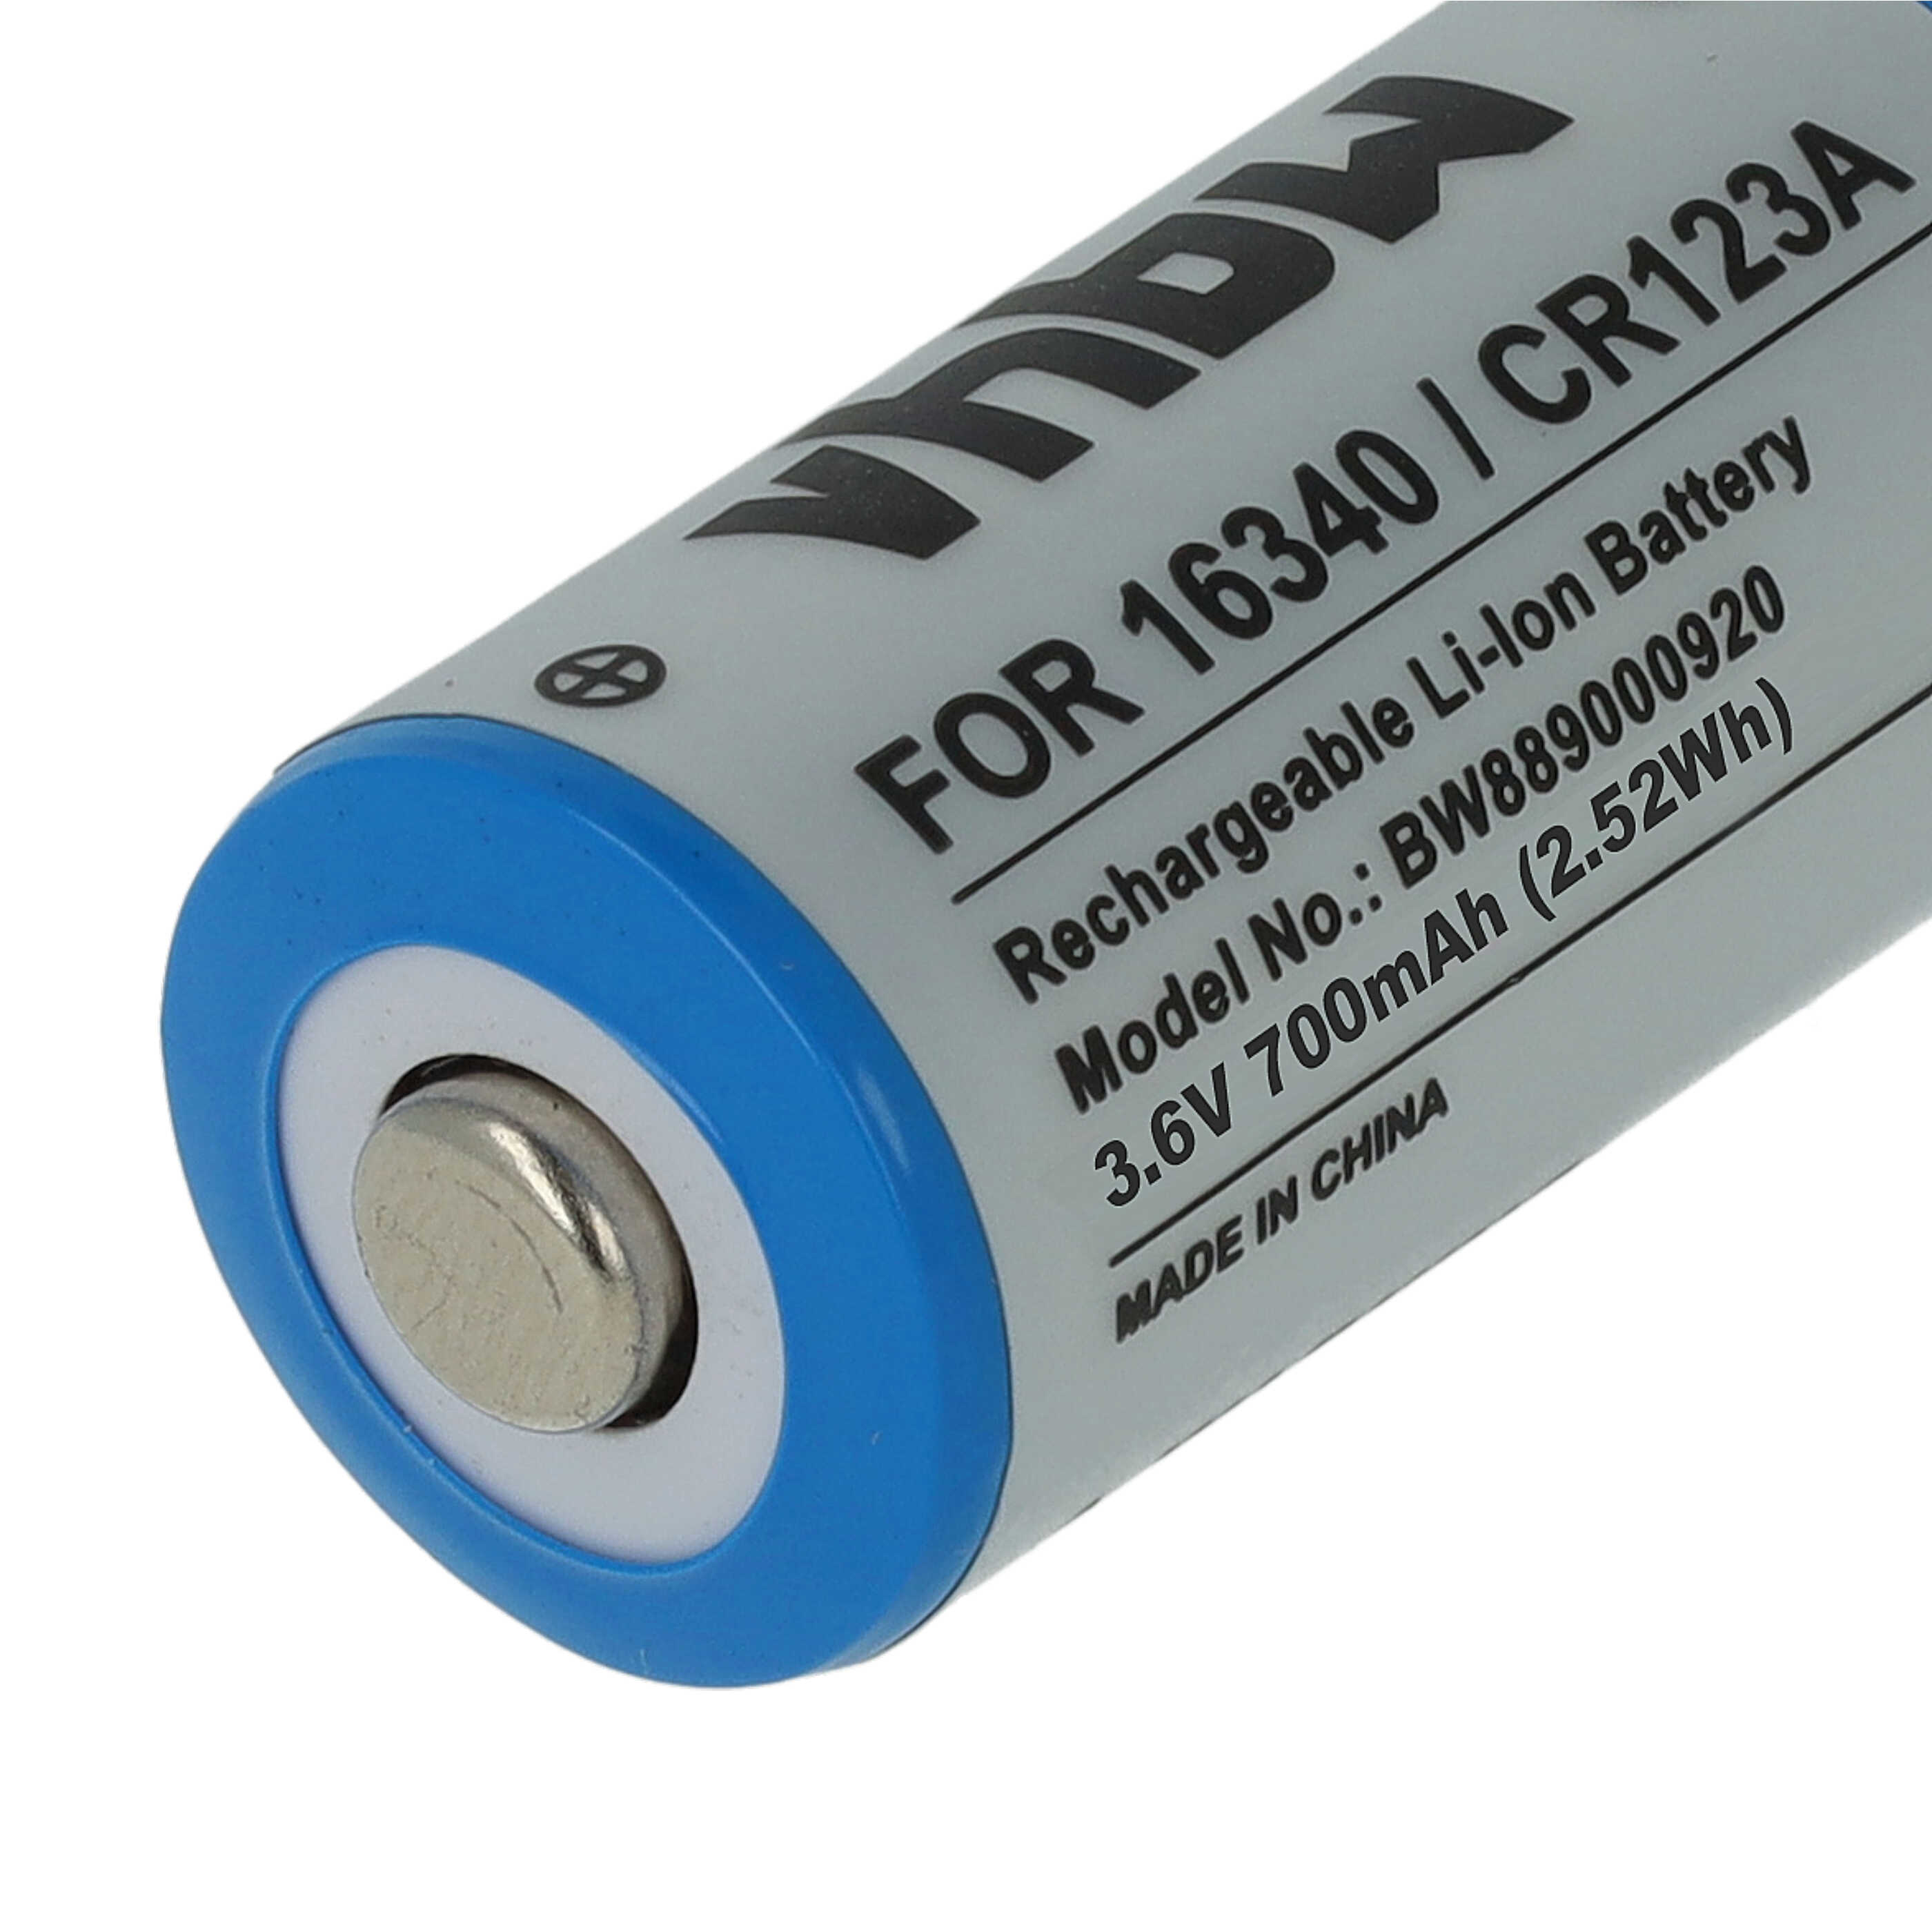 Batteries (5x pièces) remplace 16340, CR123R, CR17335, CR17345, CR123A - 700mAh 3,6V Li-ion, 1x cellules